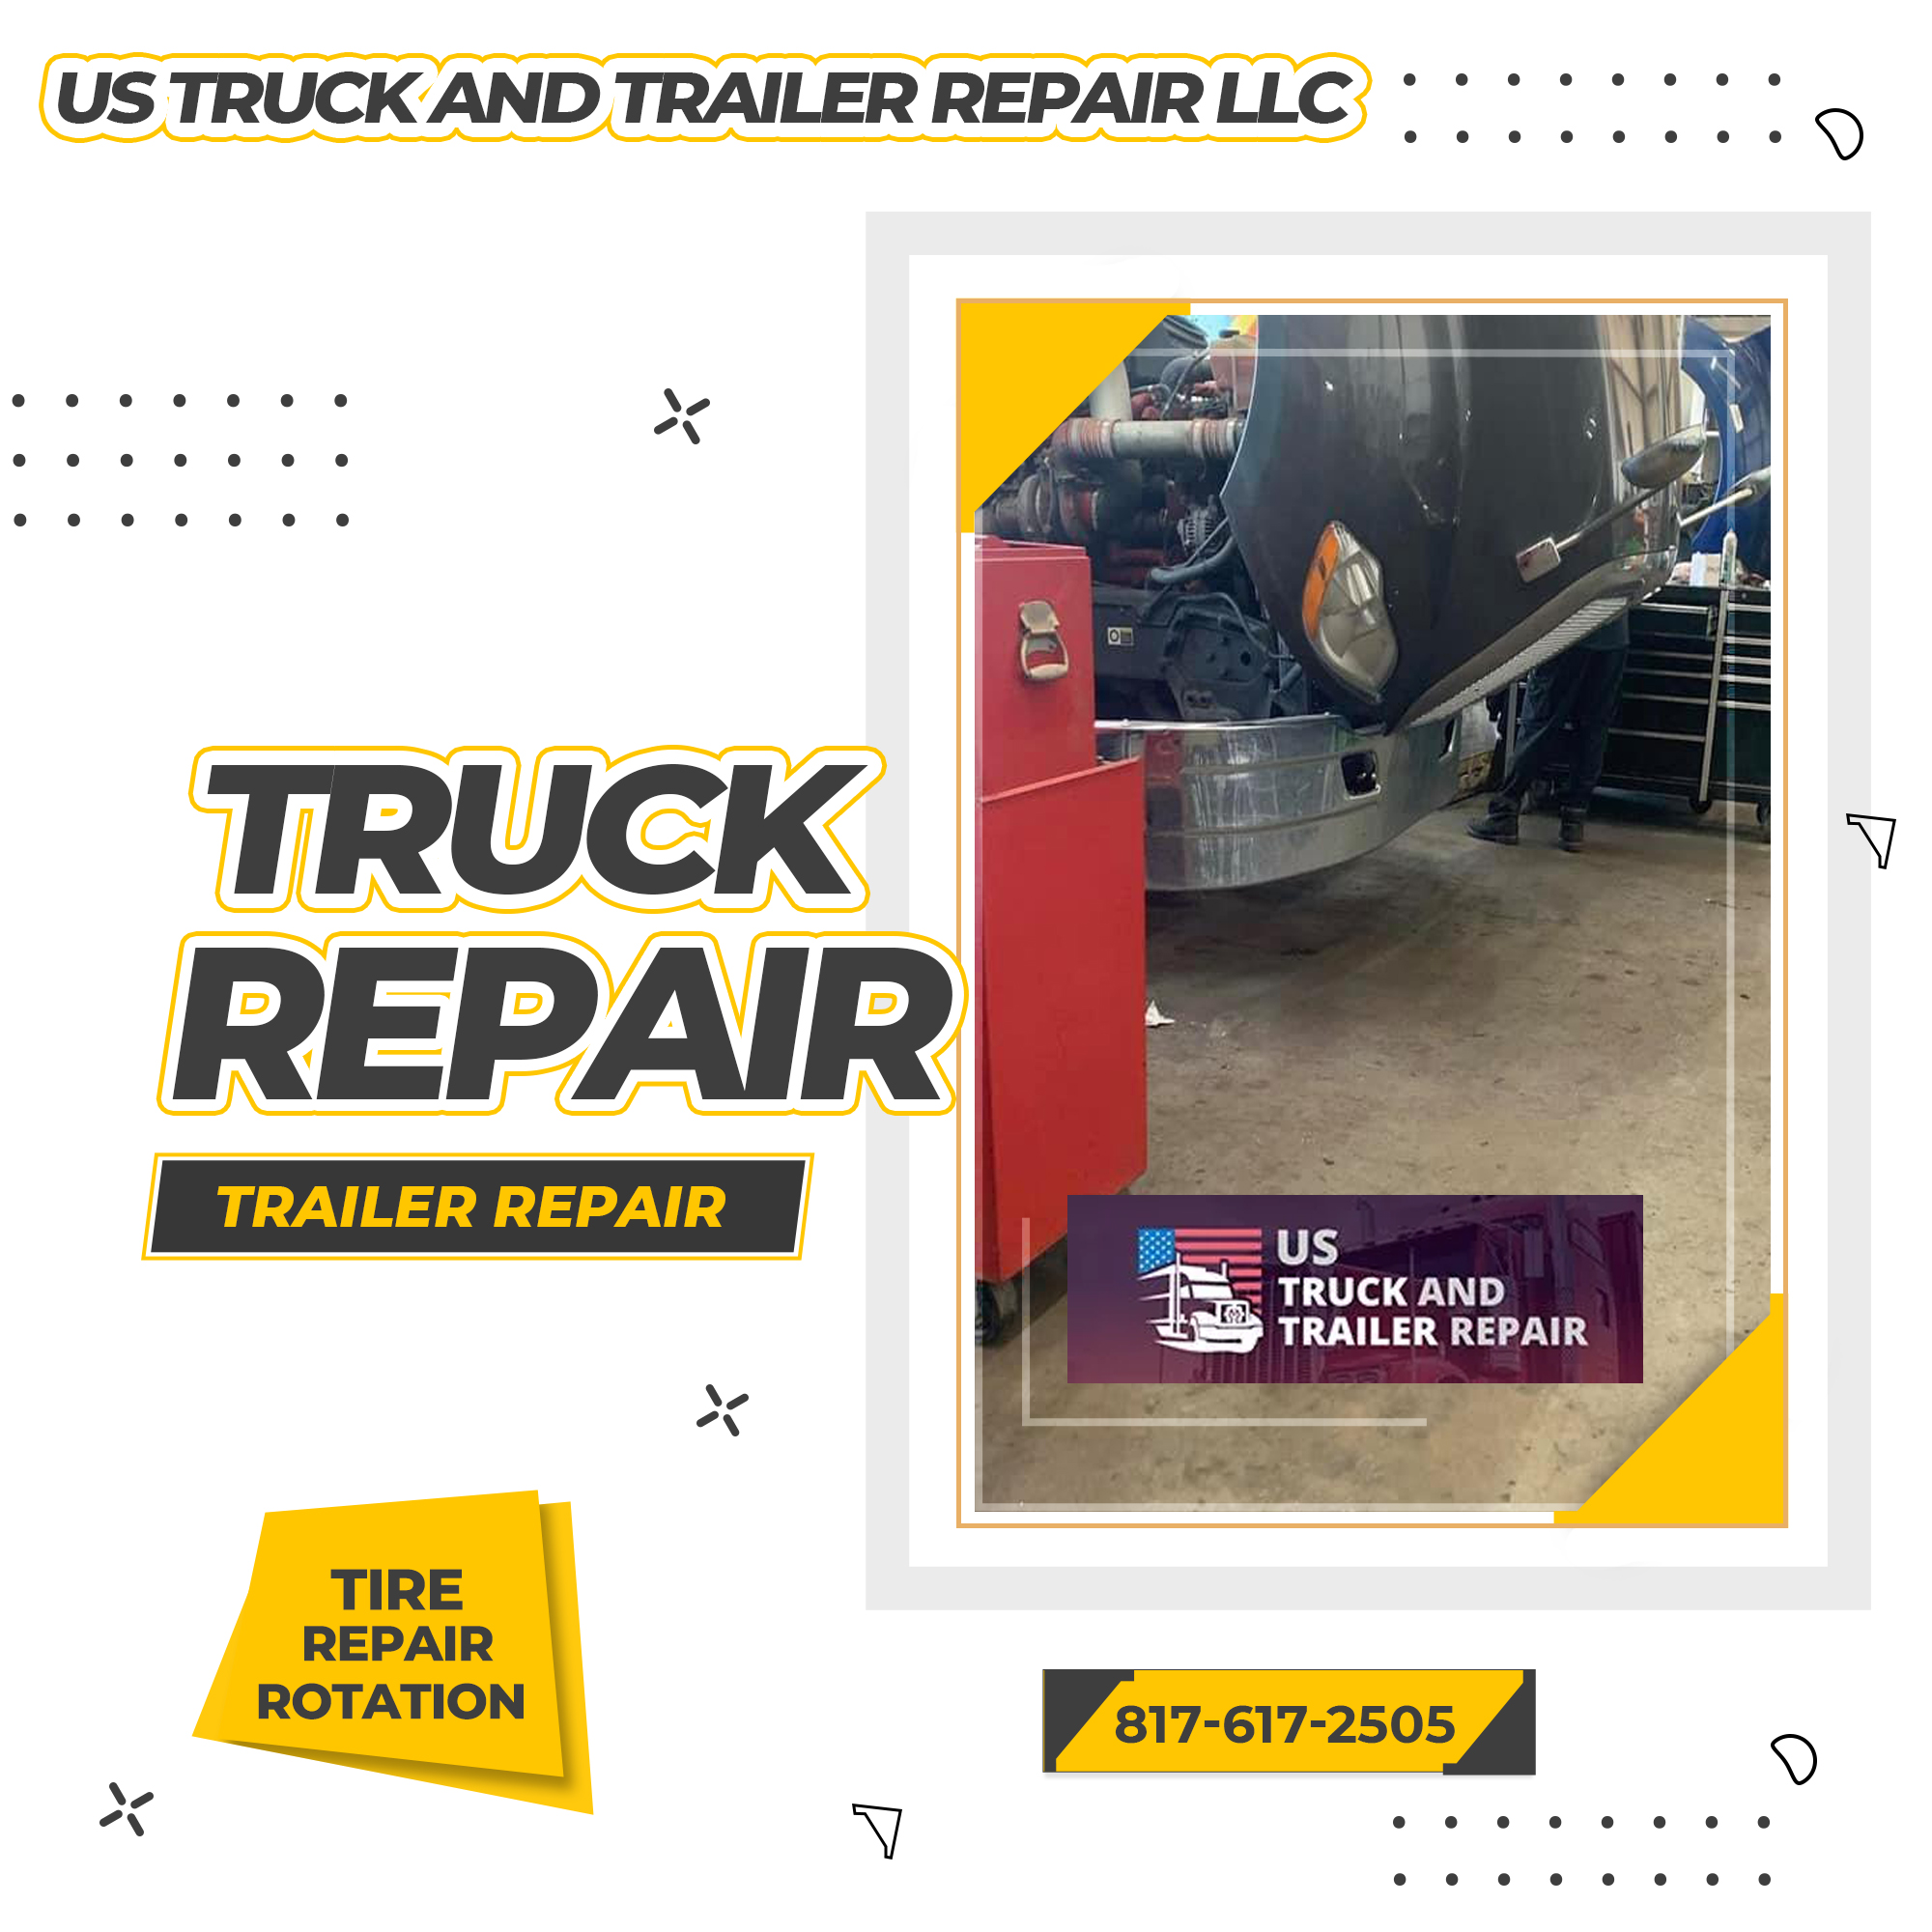 US Truck and Trailer Repair LLC